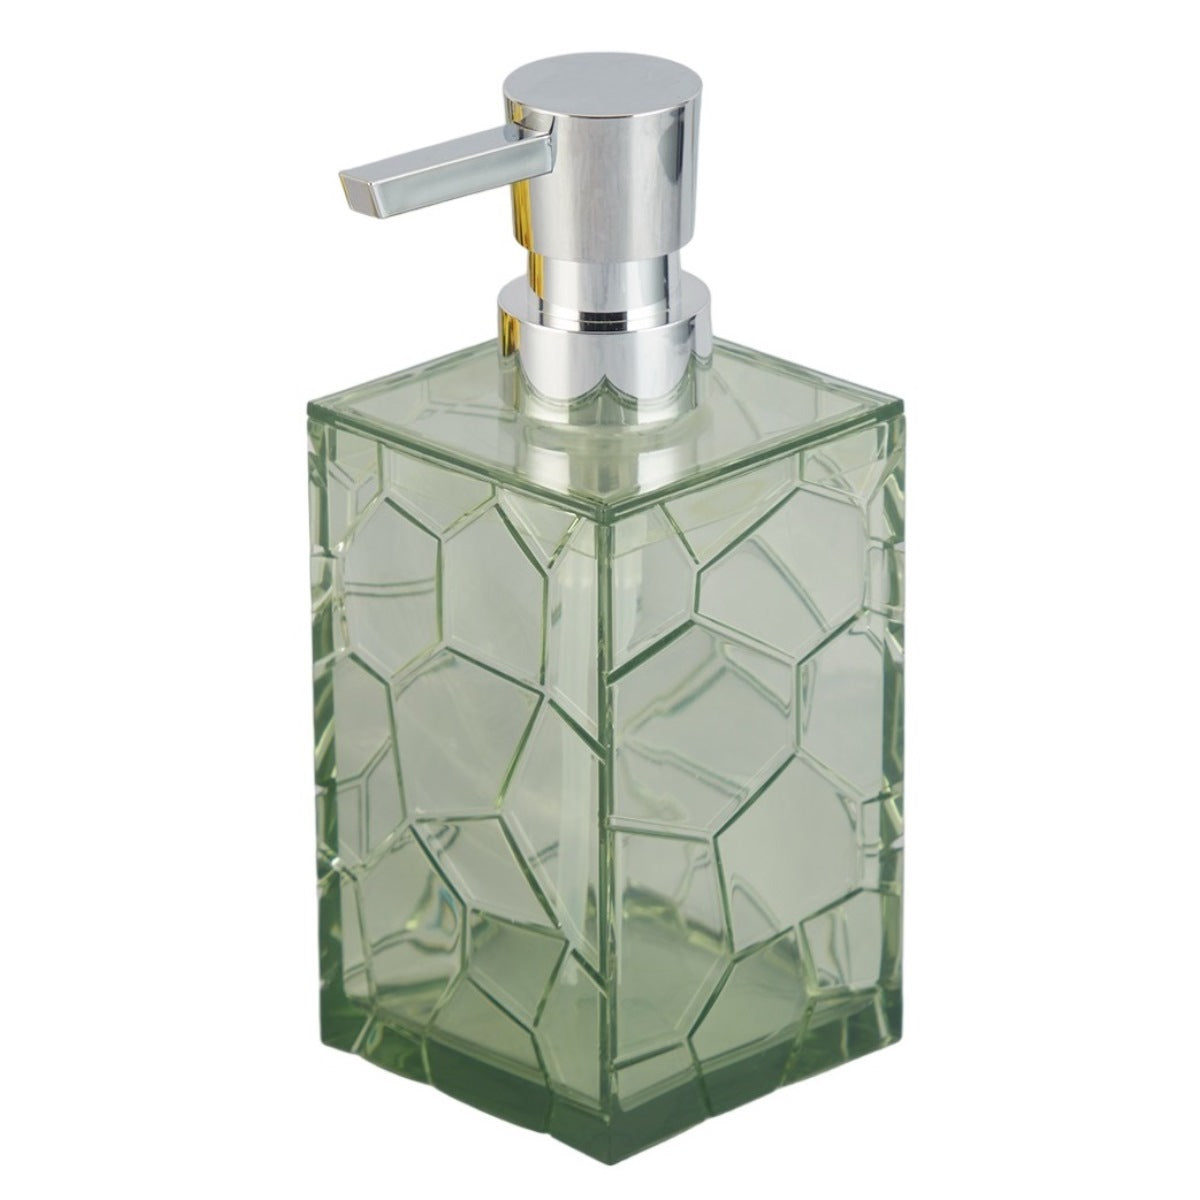 Acrylic Soap Dispenser Pump for Bathroom for Bath Gel, Lotion, Shampoo (10012)